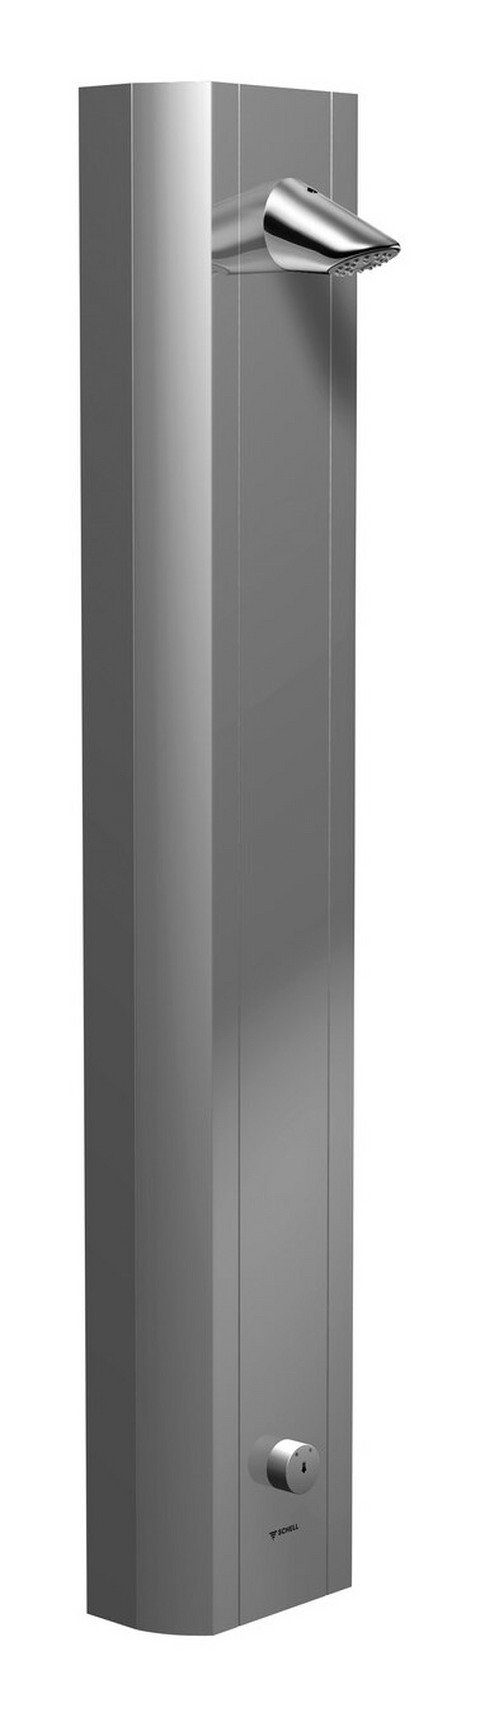 Schell Duschsäule Linus, Höhe 120 cm, Duschpaneel vorgemischtes Wasser m. Duschkopf Aerosolarm